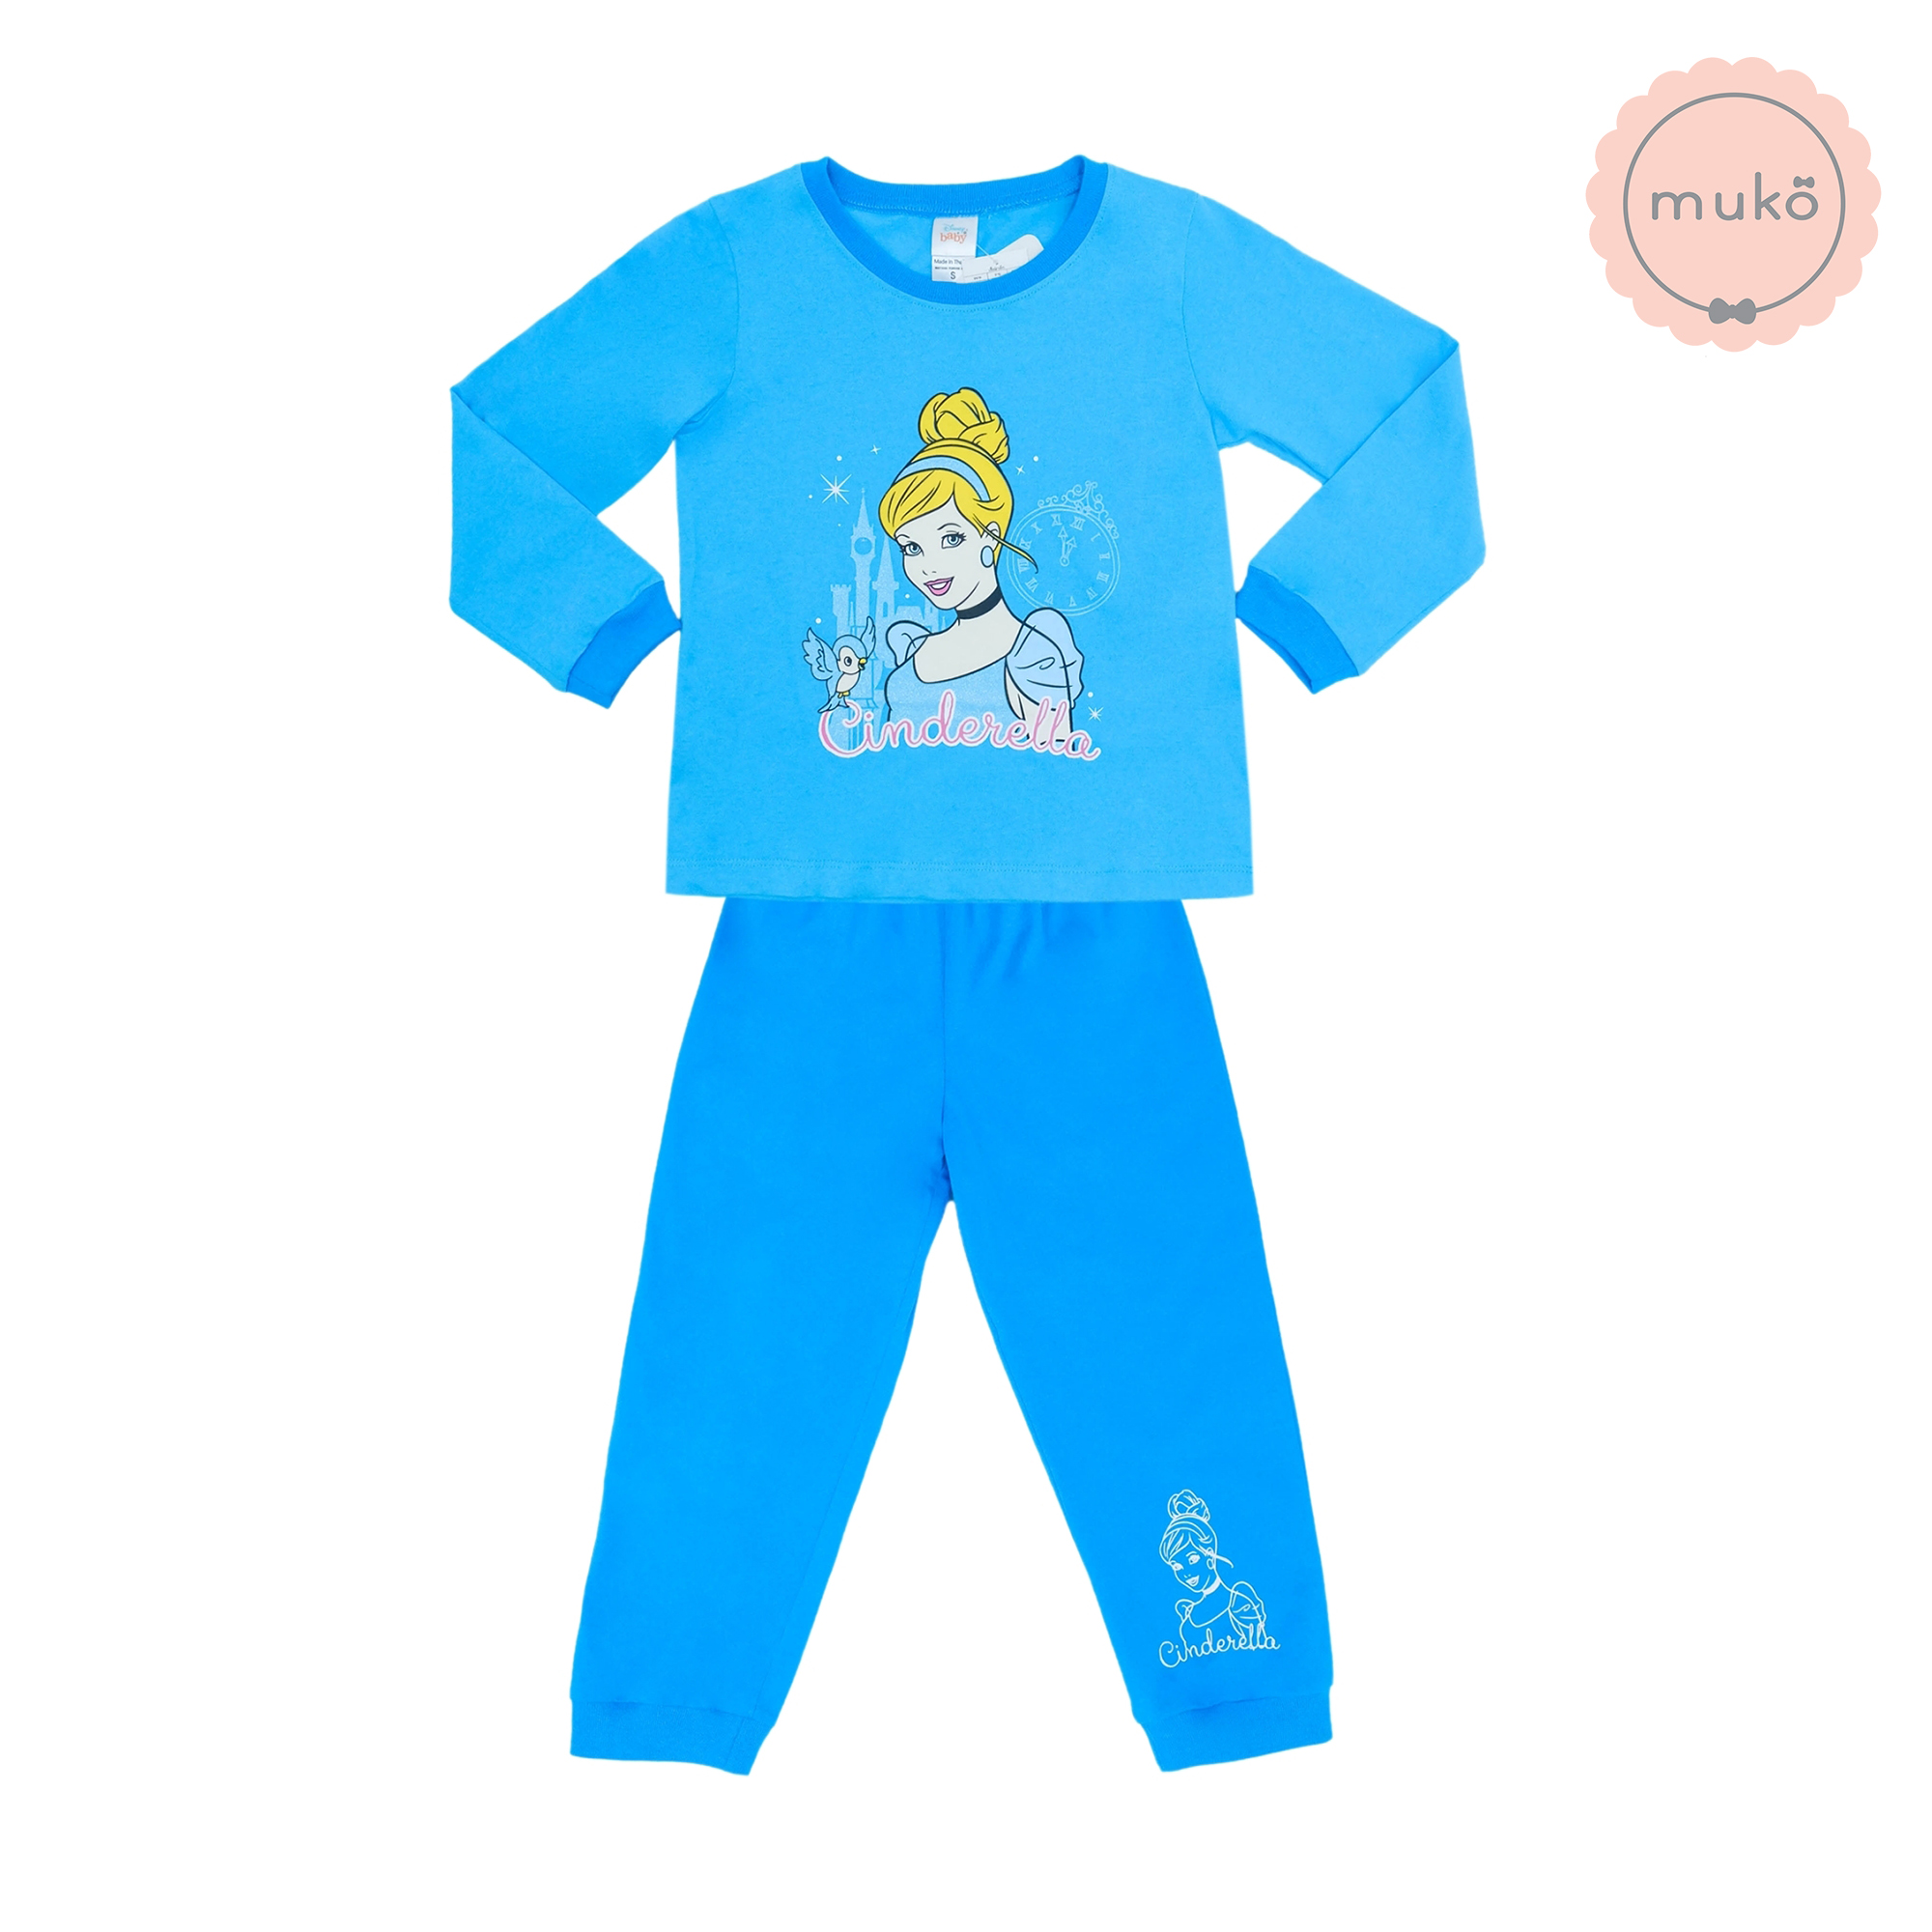 ชุดเด็ก 7-10 ขวบ แขนยาว-ขายาว (Size XL) DPC127-05-XL-Blue XL ลาย เจ้าหญิงซินเดอเรลล่า Cinderella สีฟ้า (เจ้าหญิงและนกน้อย)